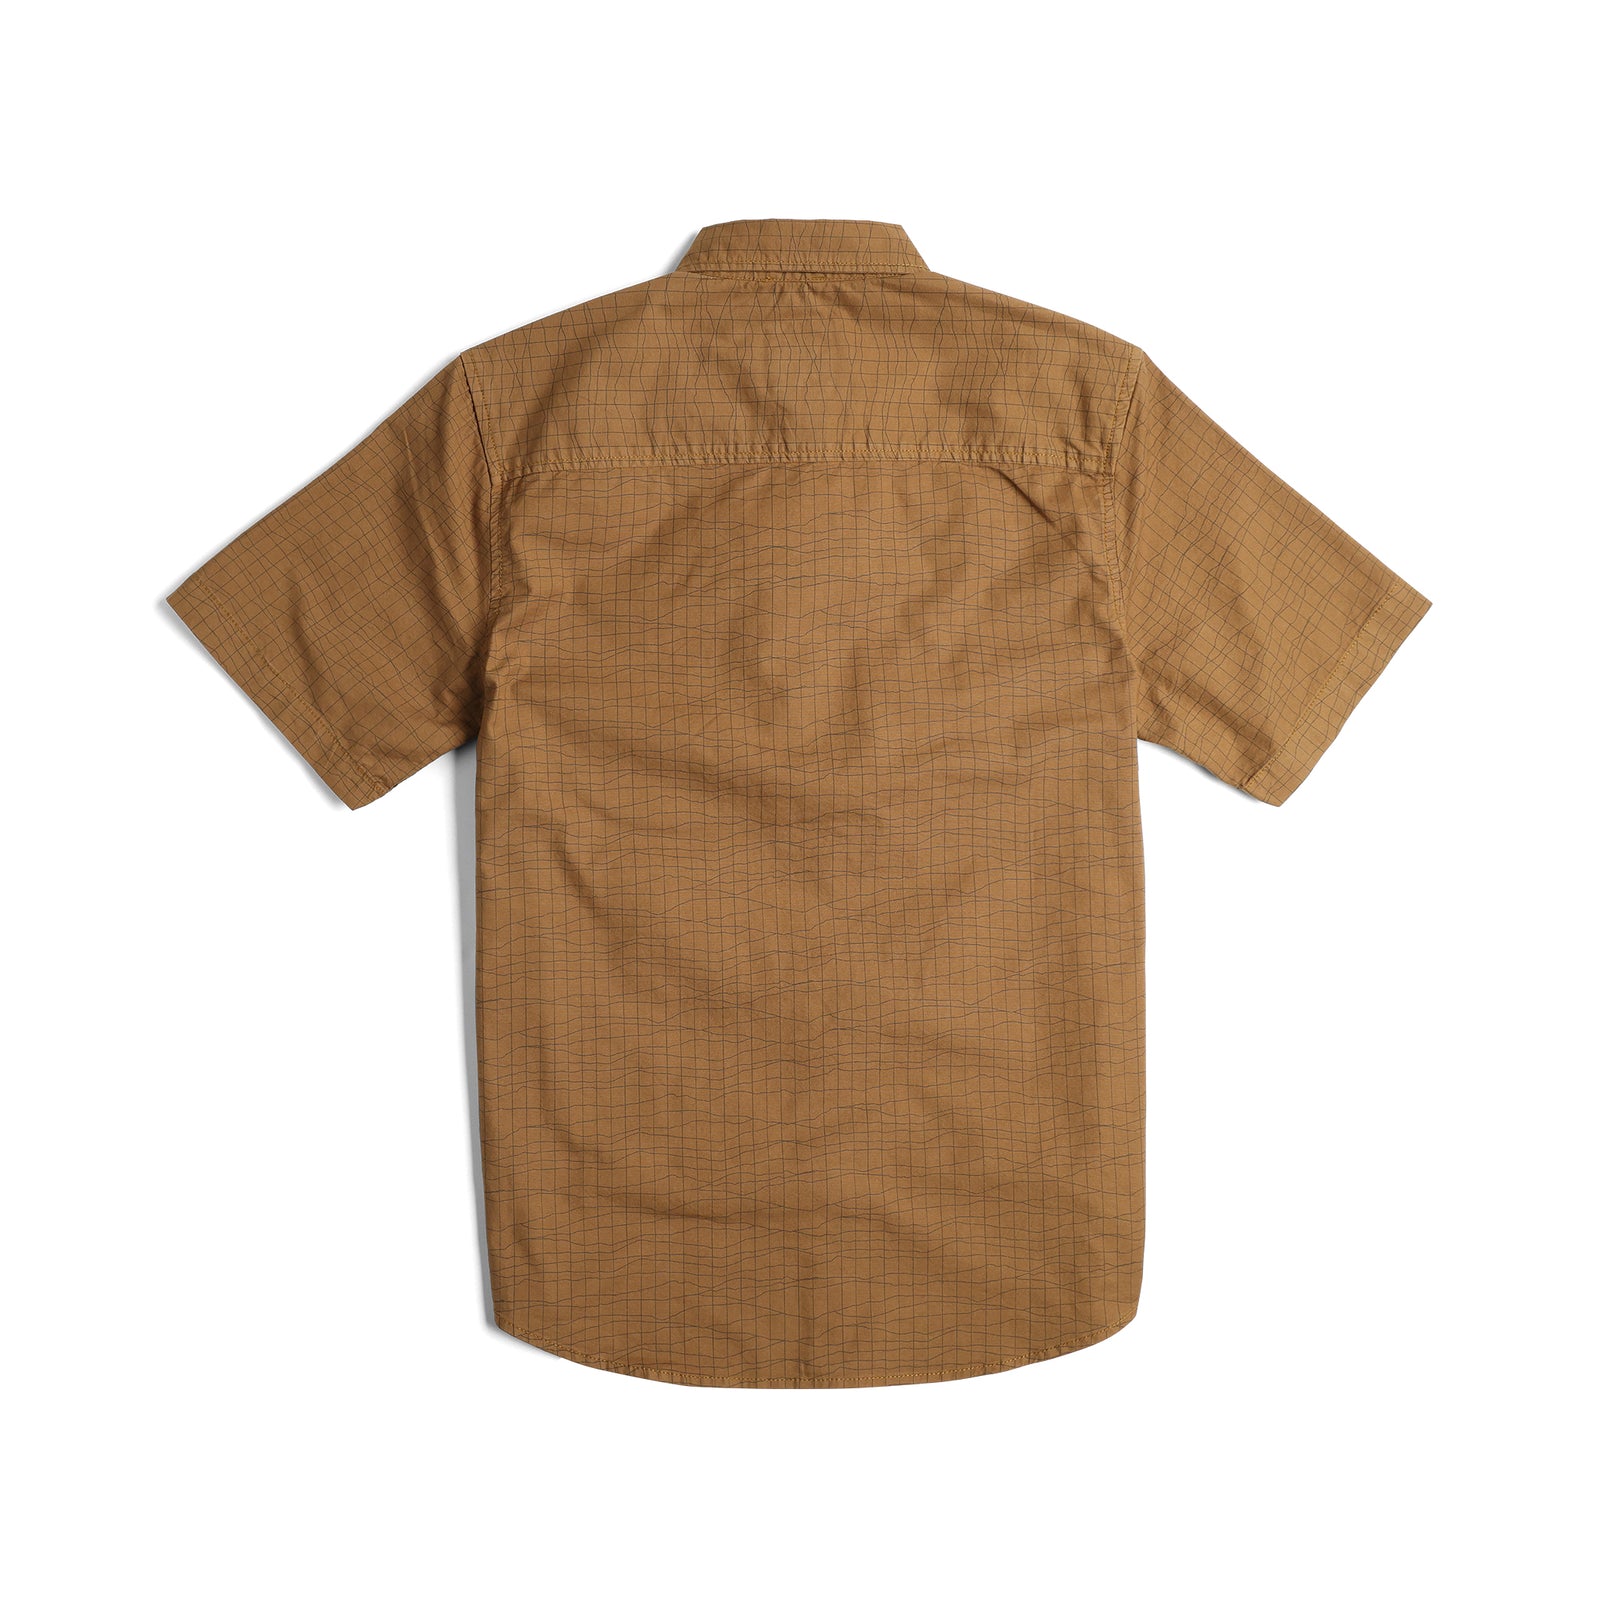 Back View of Topo Designs Dirt Desert Shirt Ss - Men's in "Dark Khaki Terrain"